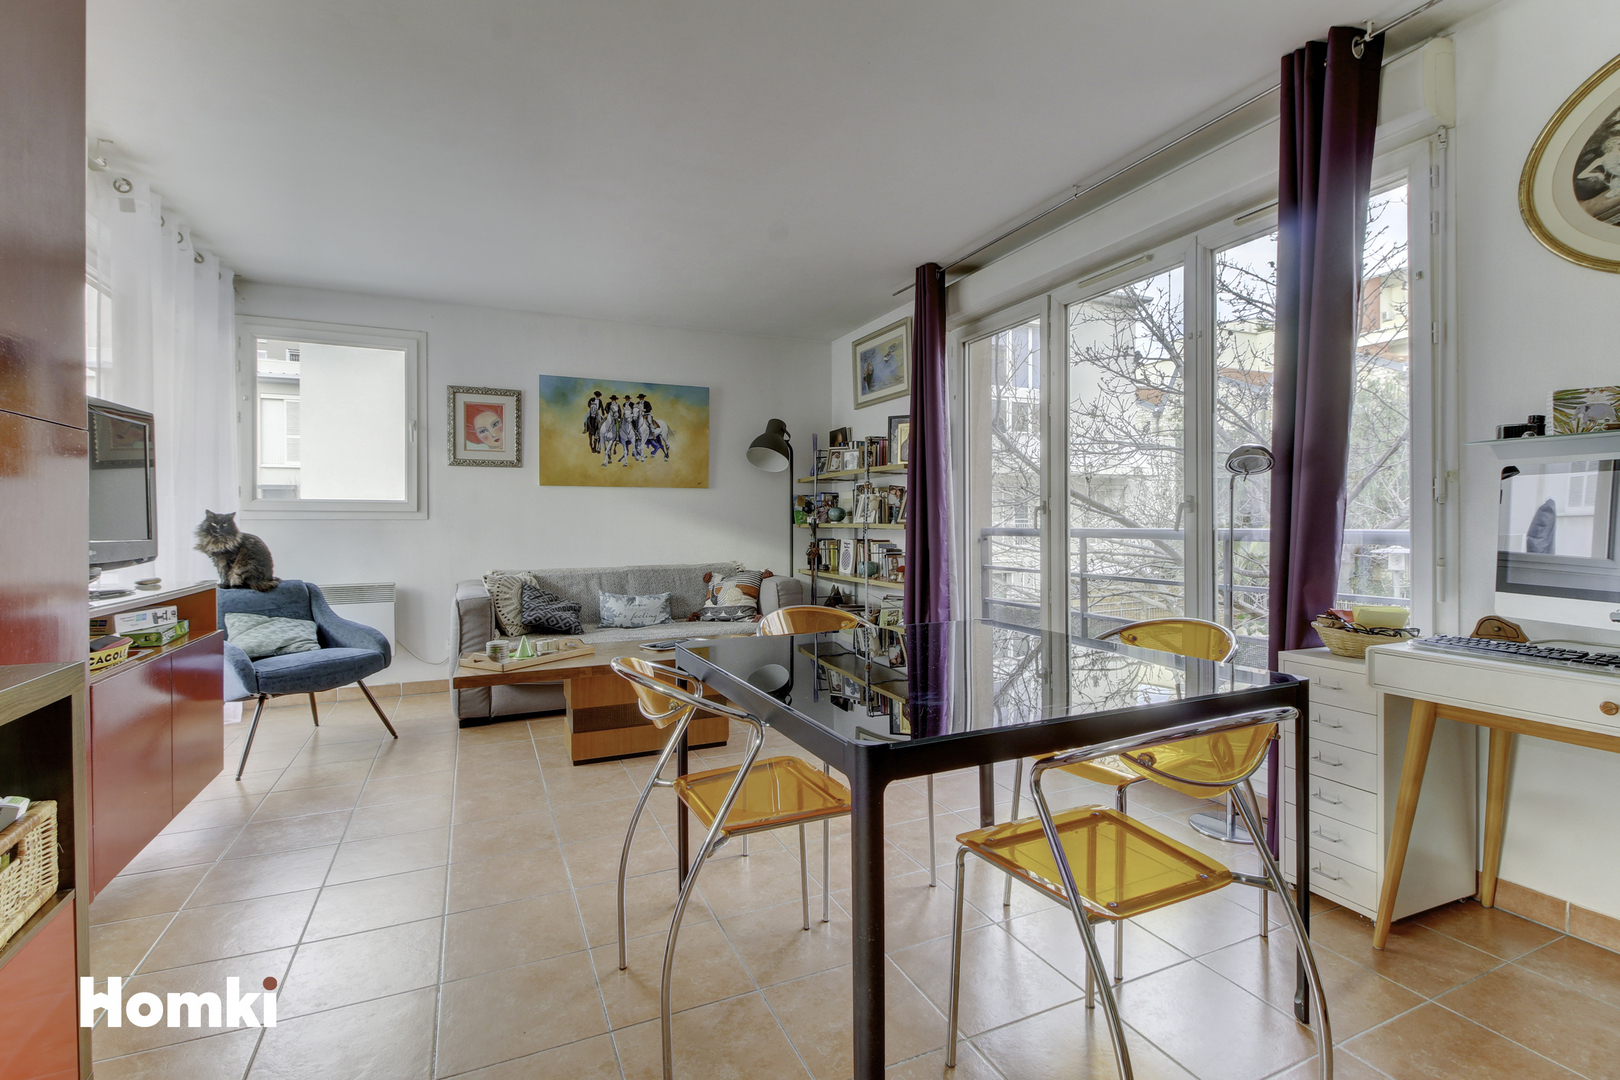 Homki - Vente Appartement  de 46.0 m² à Marseille 13002